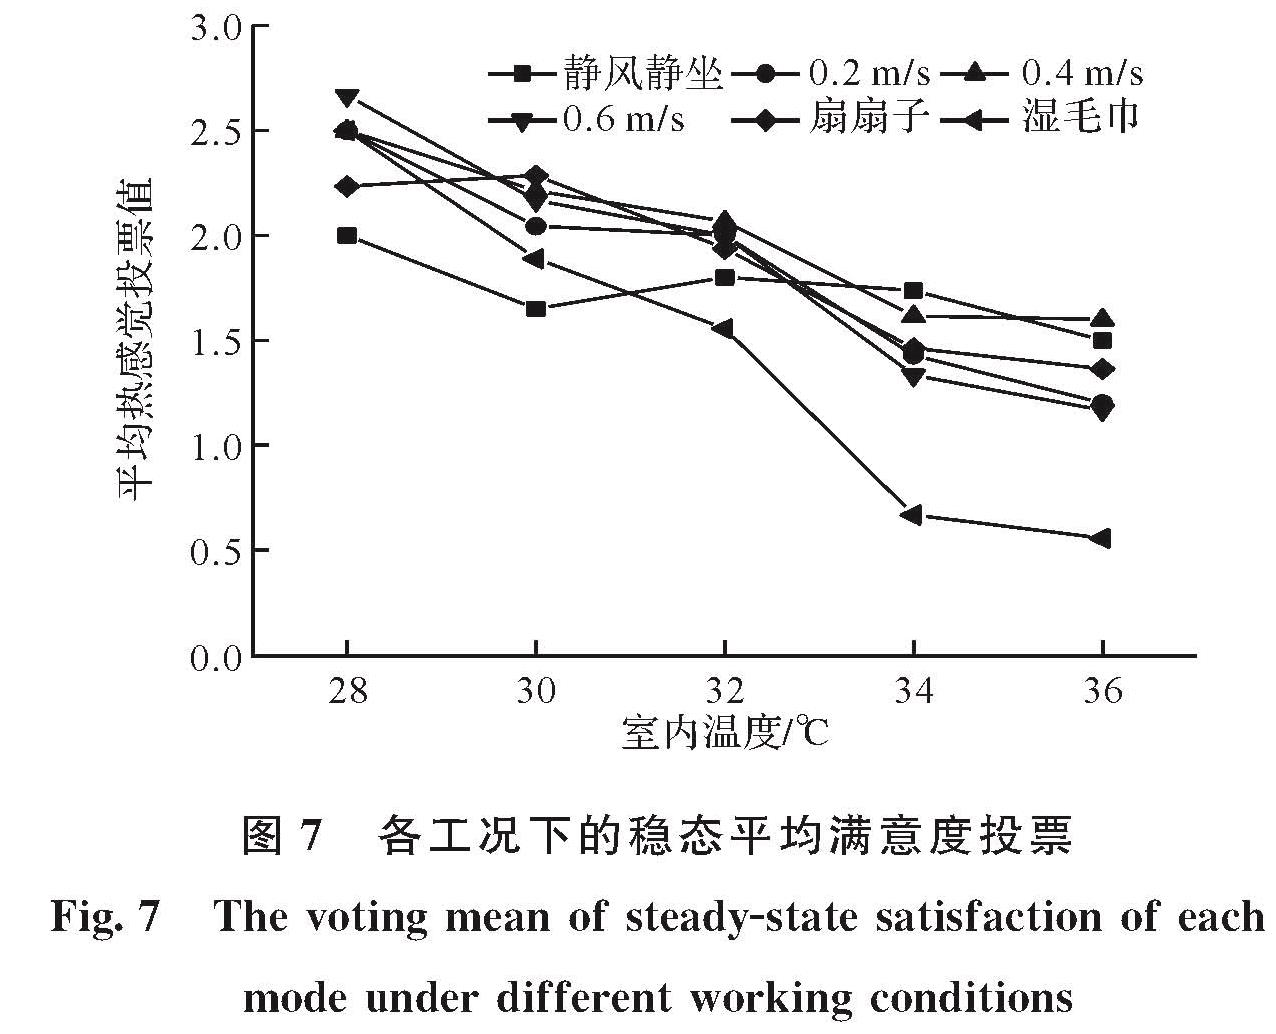 图7 各工况下的稳态平均满意度投票<br/>Fig.7 The voting mean of steady-state satisfaction of each mode under different working conditions